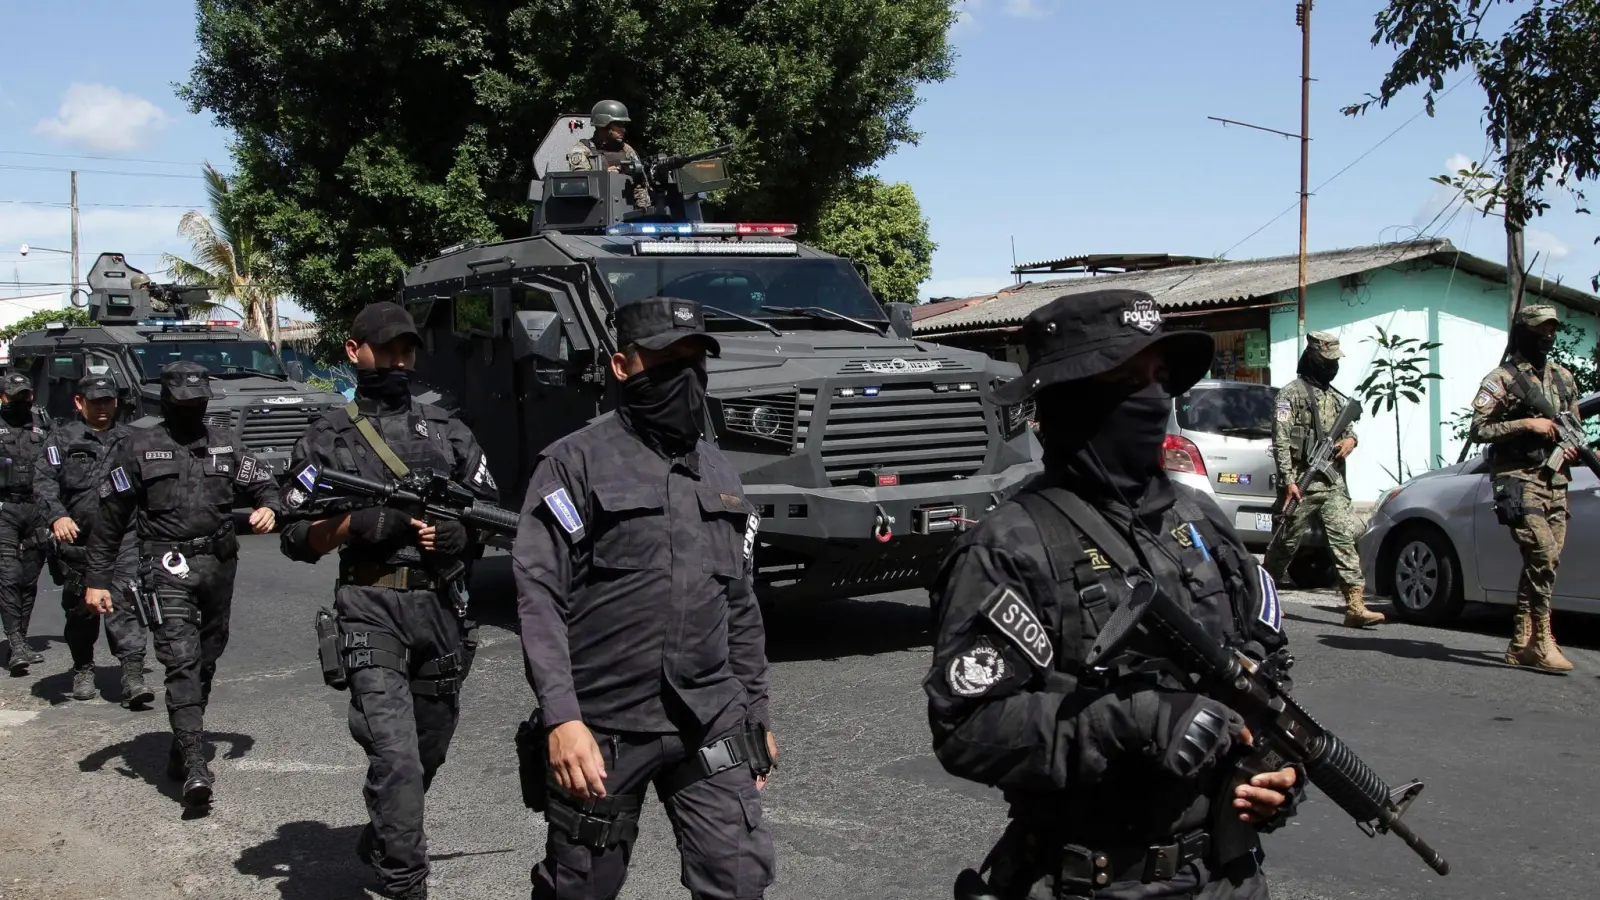 Bei einem Großeinsatz gegen die mächtigen Jugendbanden in El Salvador haben  Sicherheitskräfte die Stadt Soyapango abgeriegelt und nach Gangmitgliedern gesucht. (Foto: Salvador Melendez/AP/dpa)